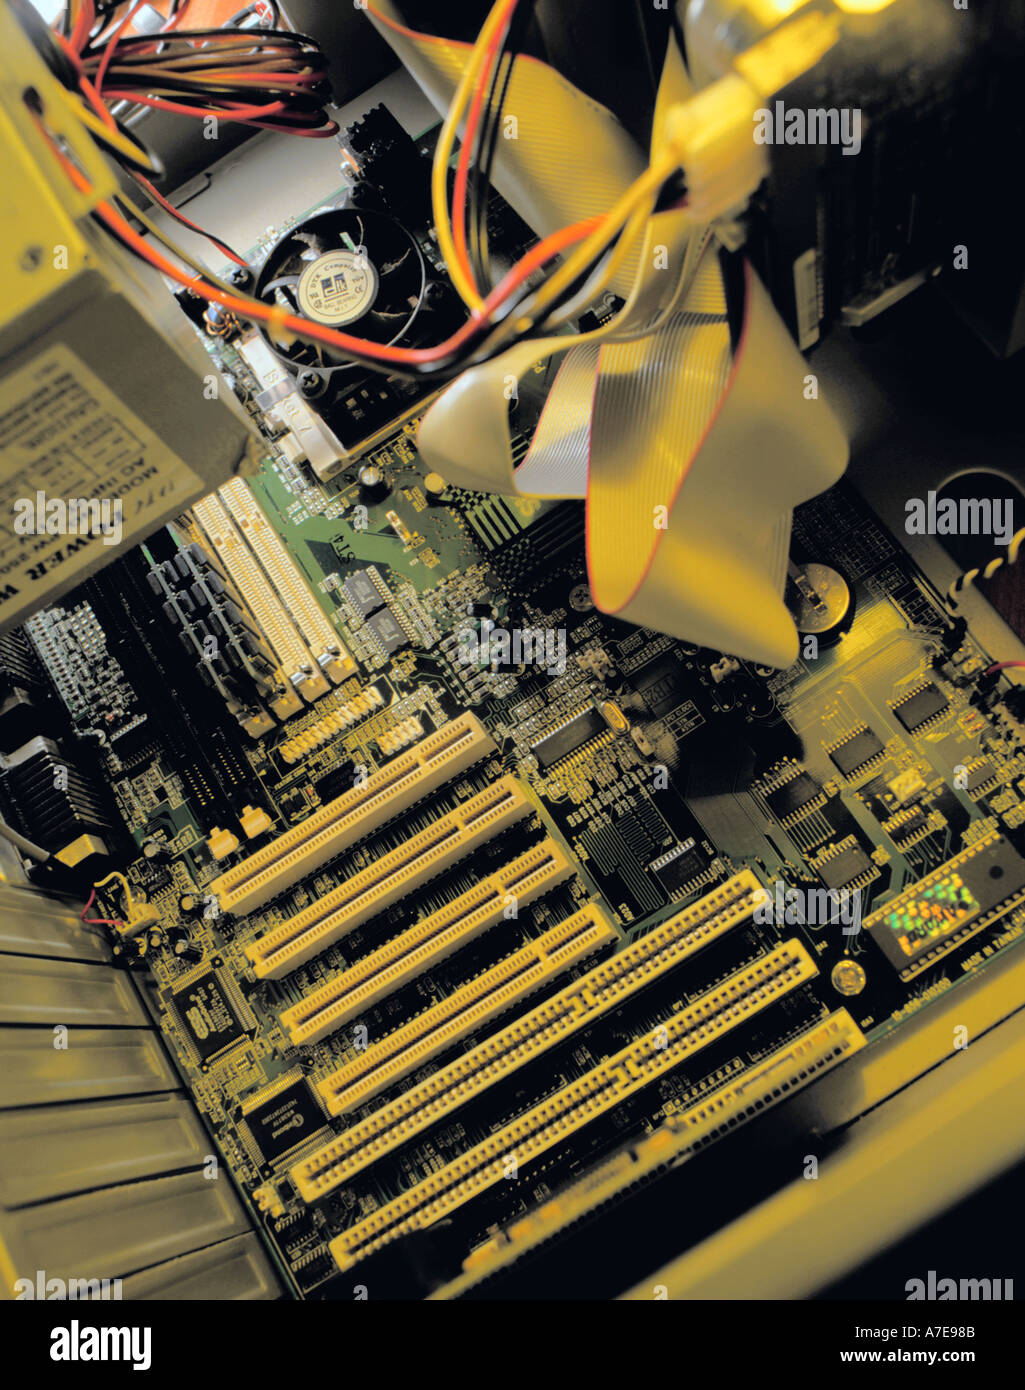 In einem Personal-Computer zeigt Hauptplatine mit SCSI-Anschlüsse für Steckdose Häfen an der Basis des Bildes. Stockfoto